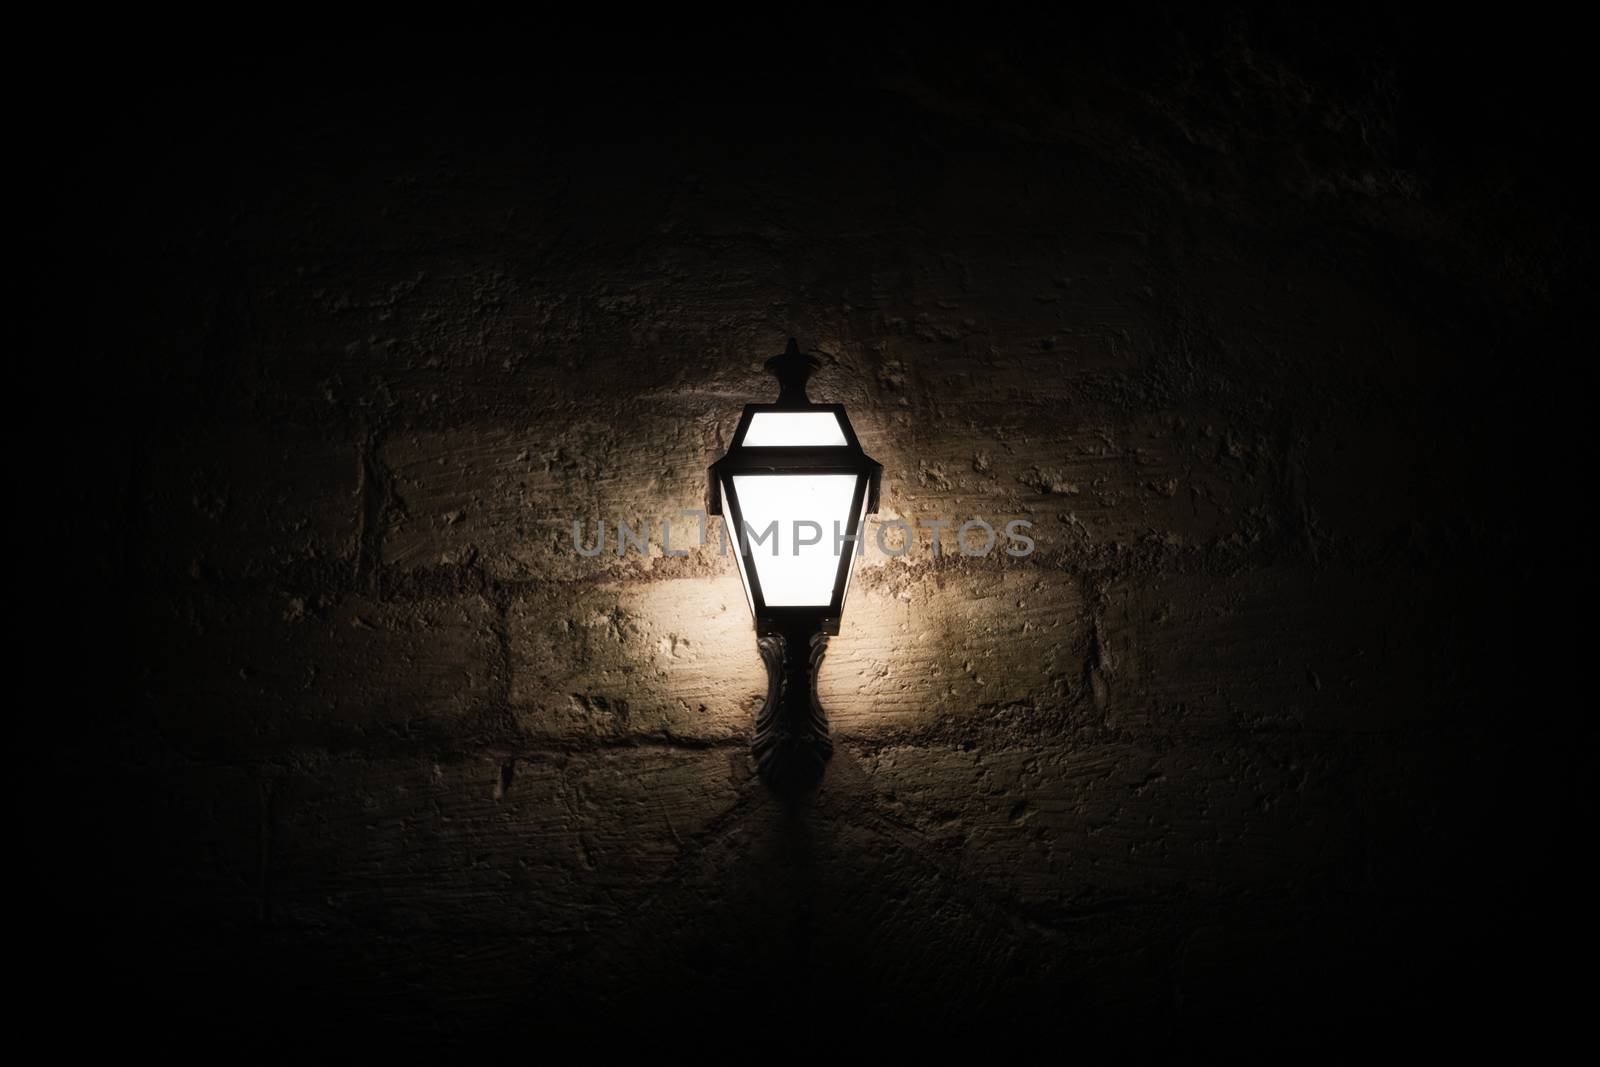 A luminous lantern on a stone wall